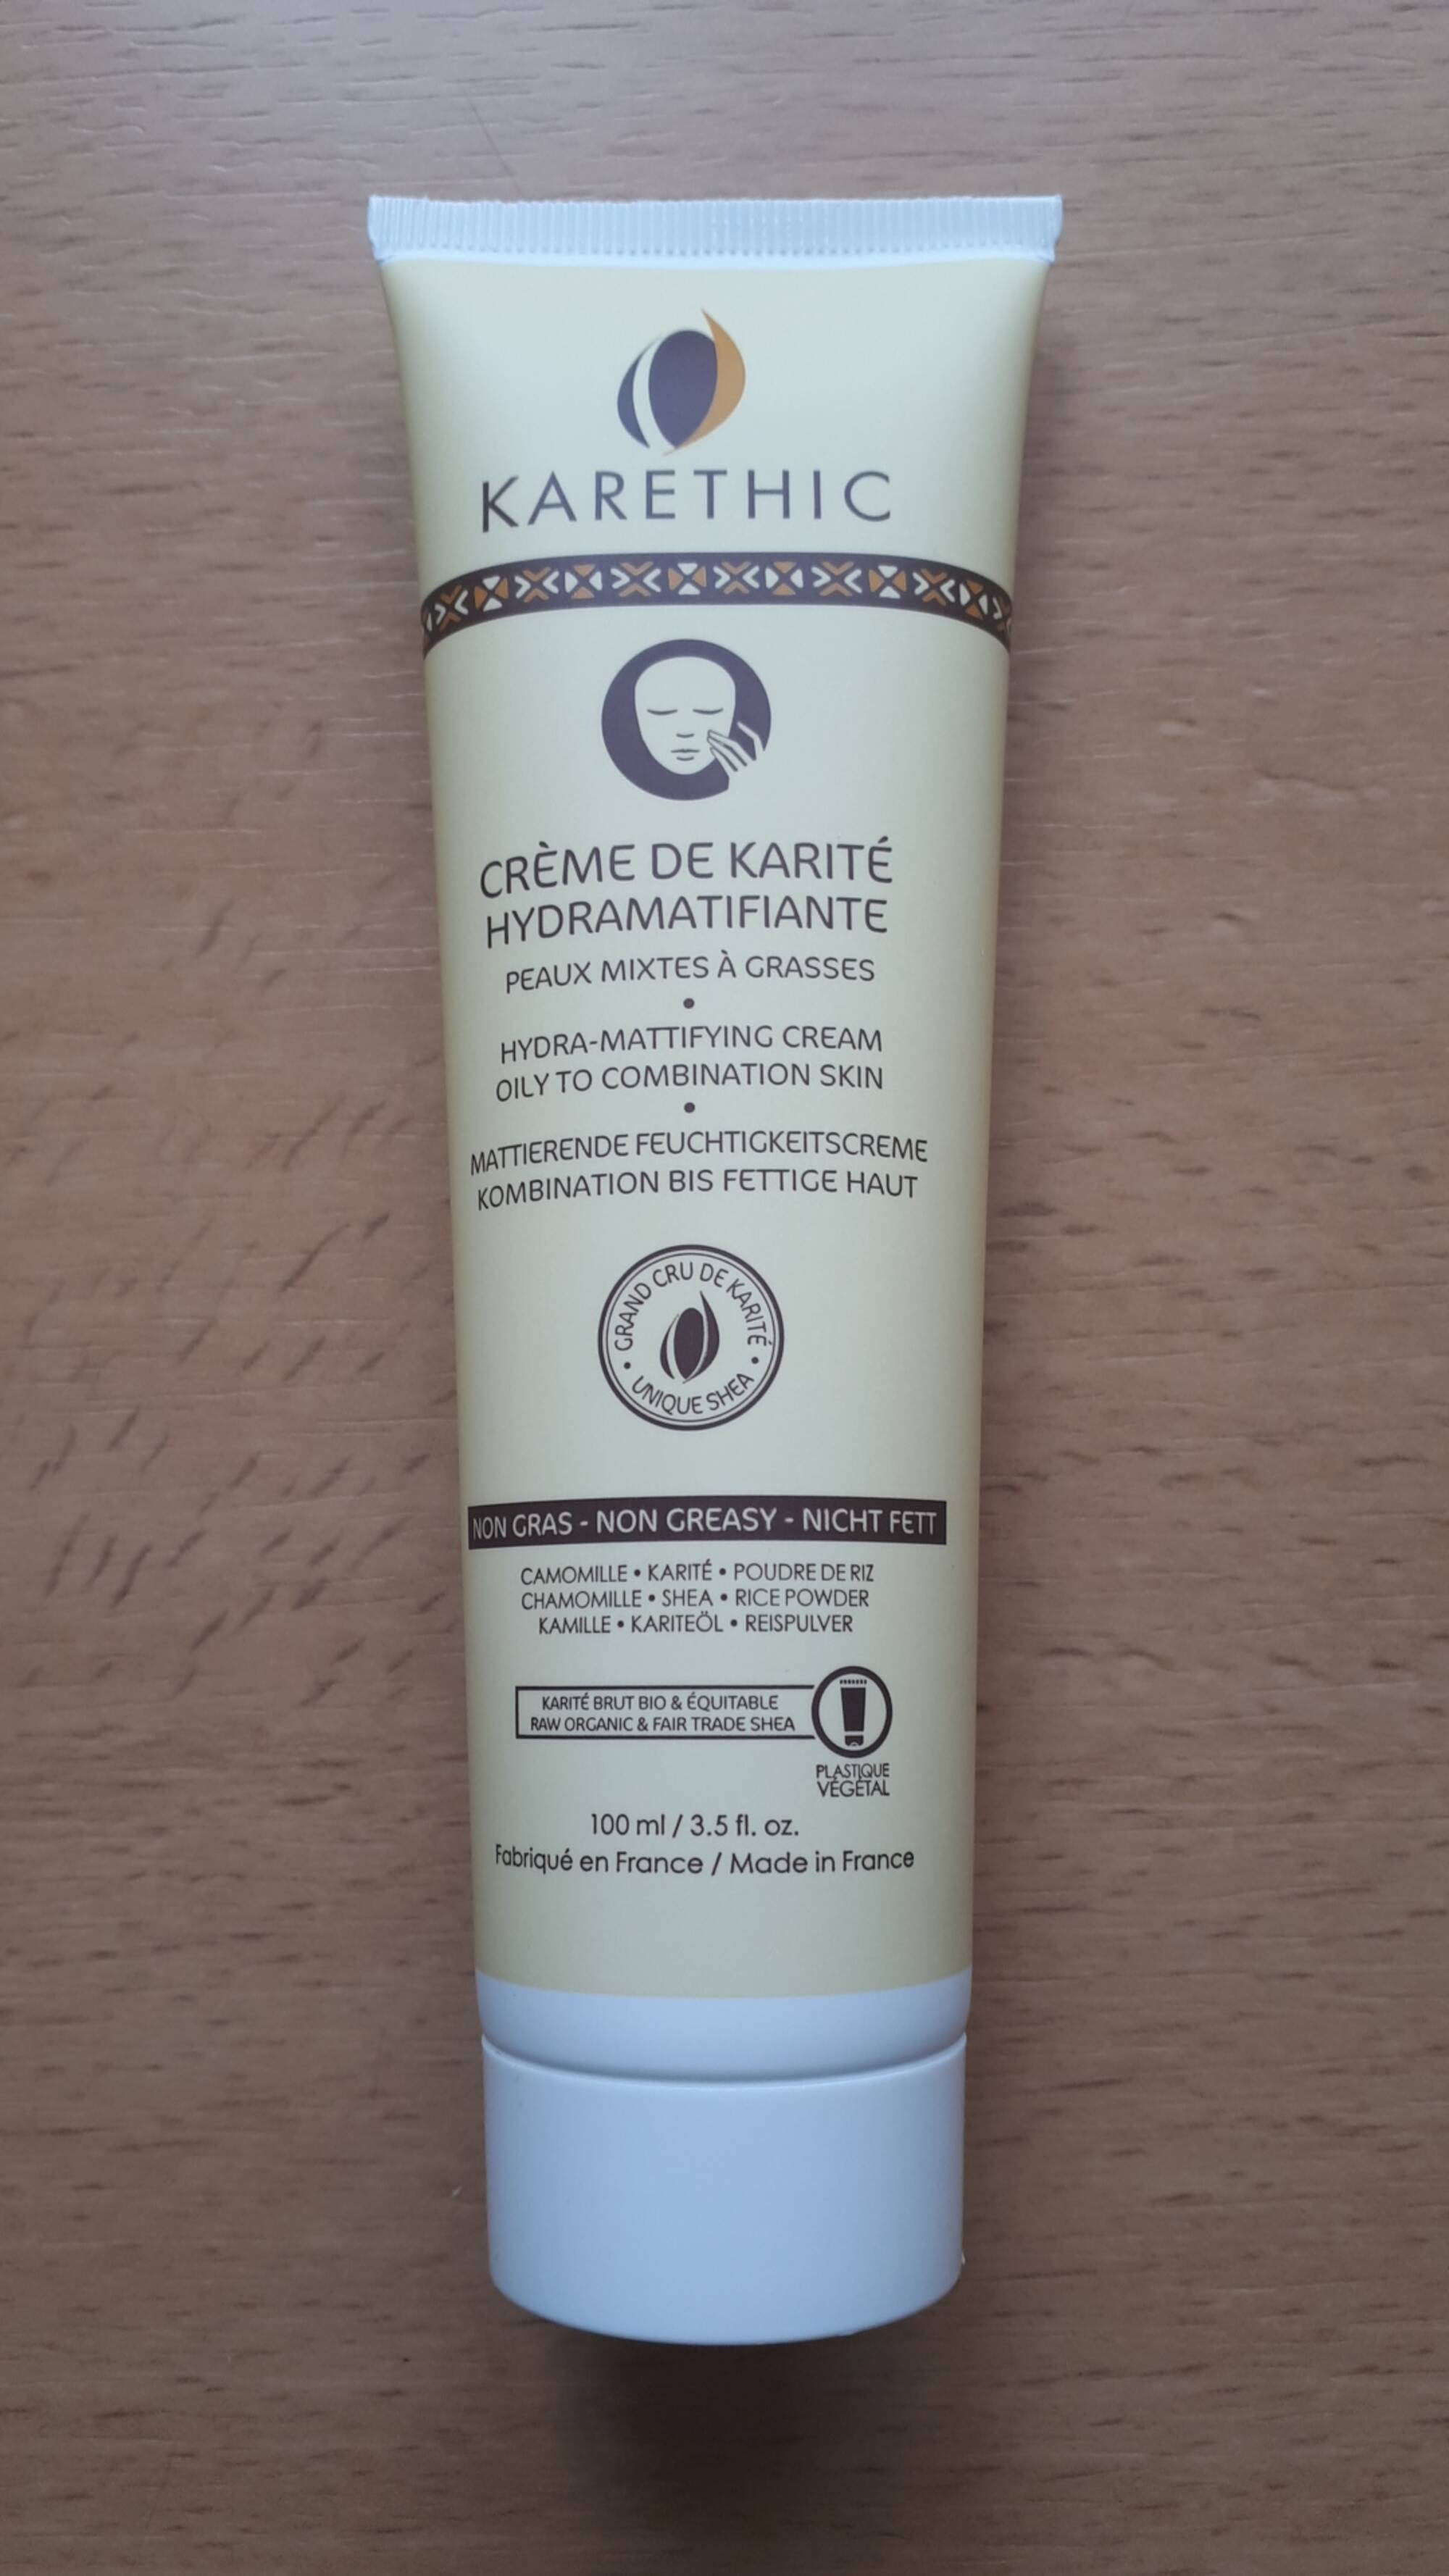 KARETHIC - Crème de karité hydramatifiante